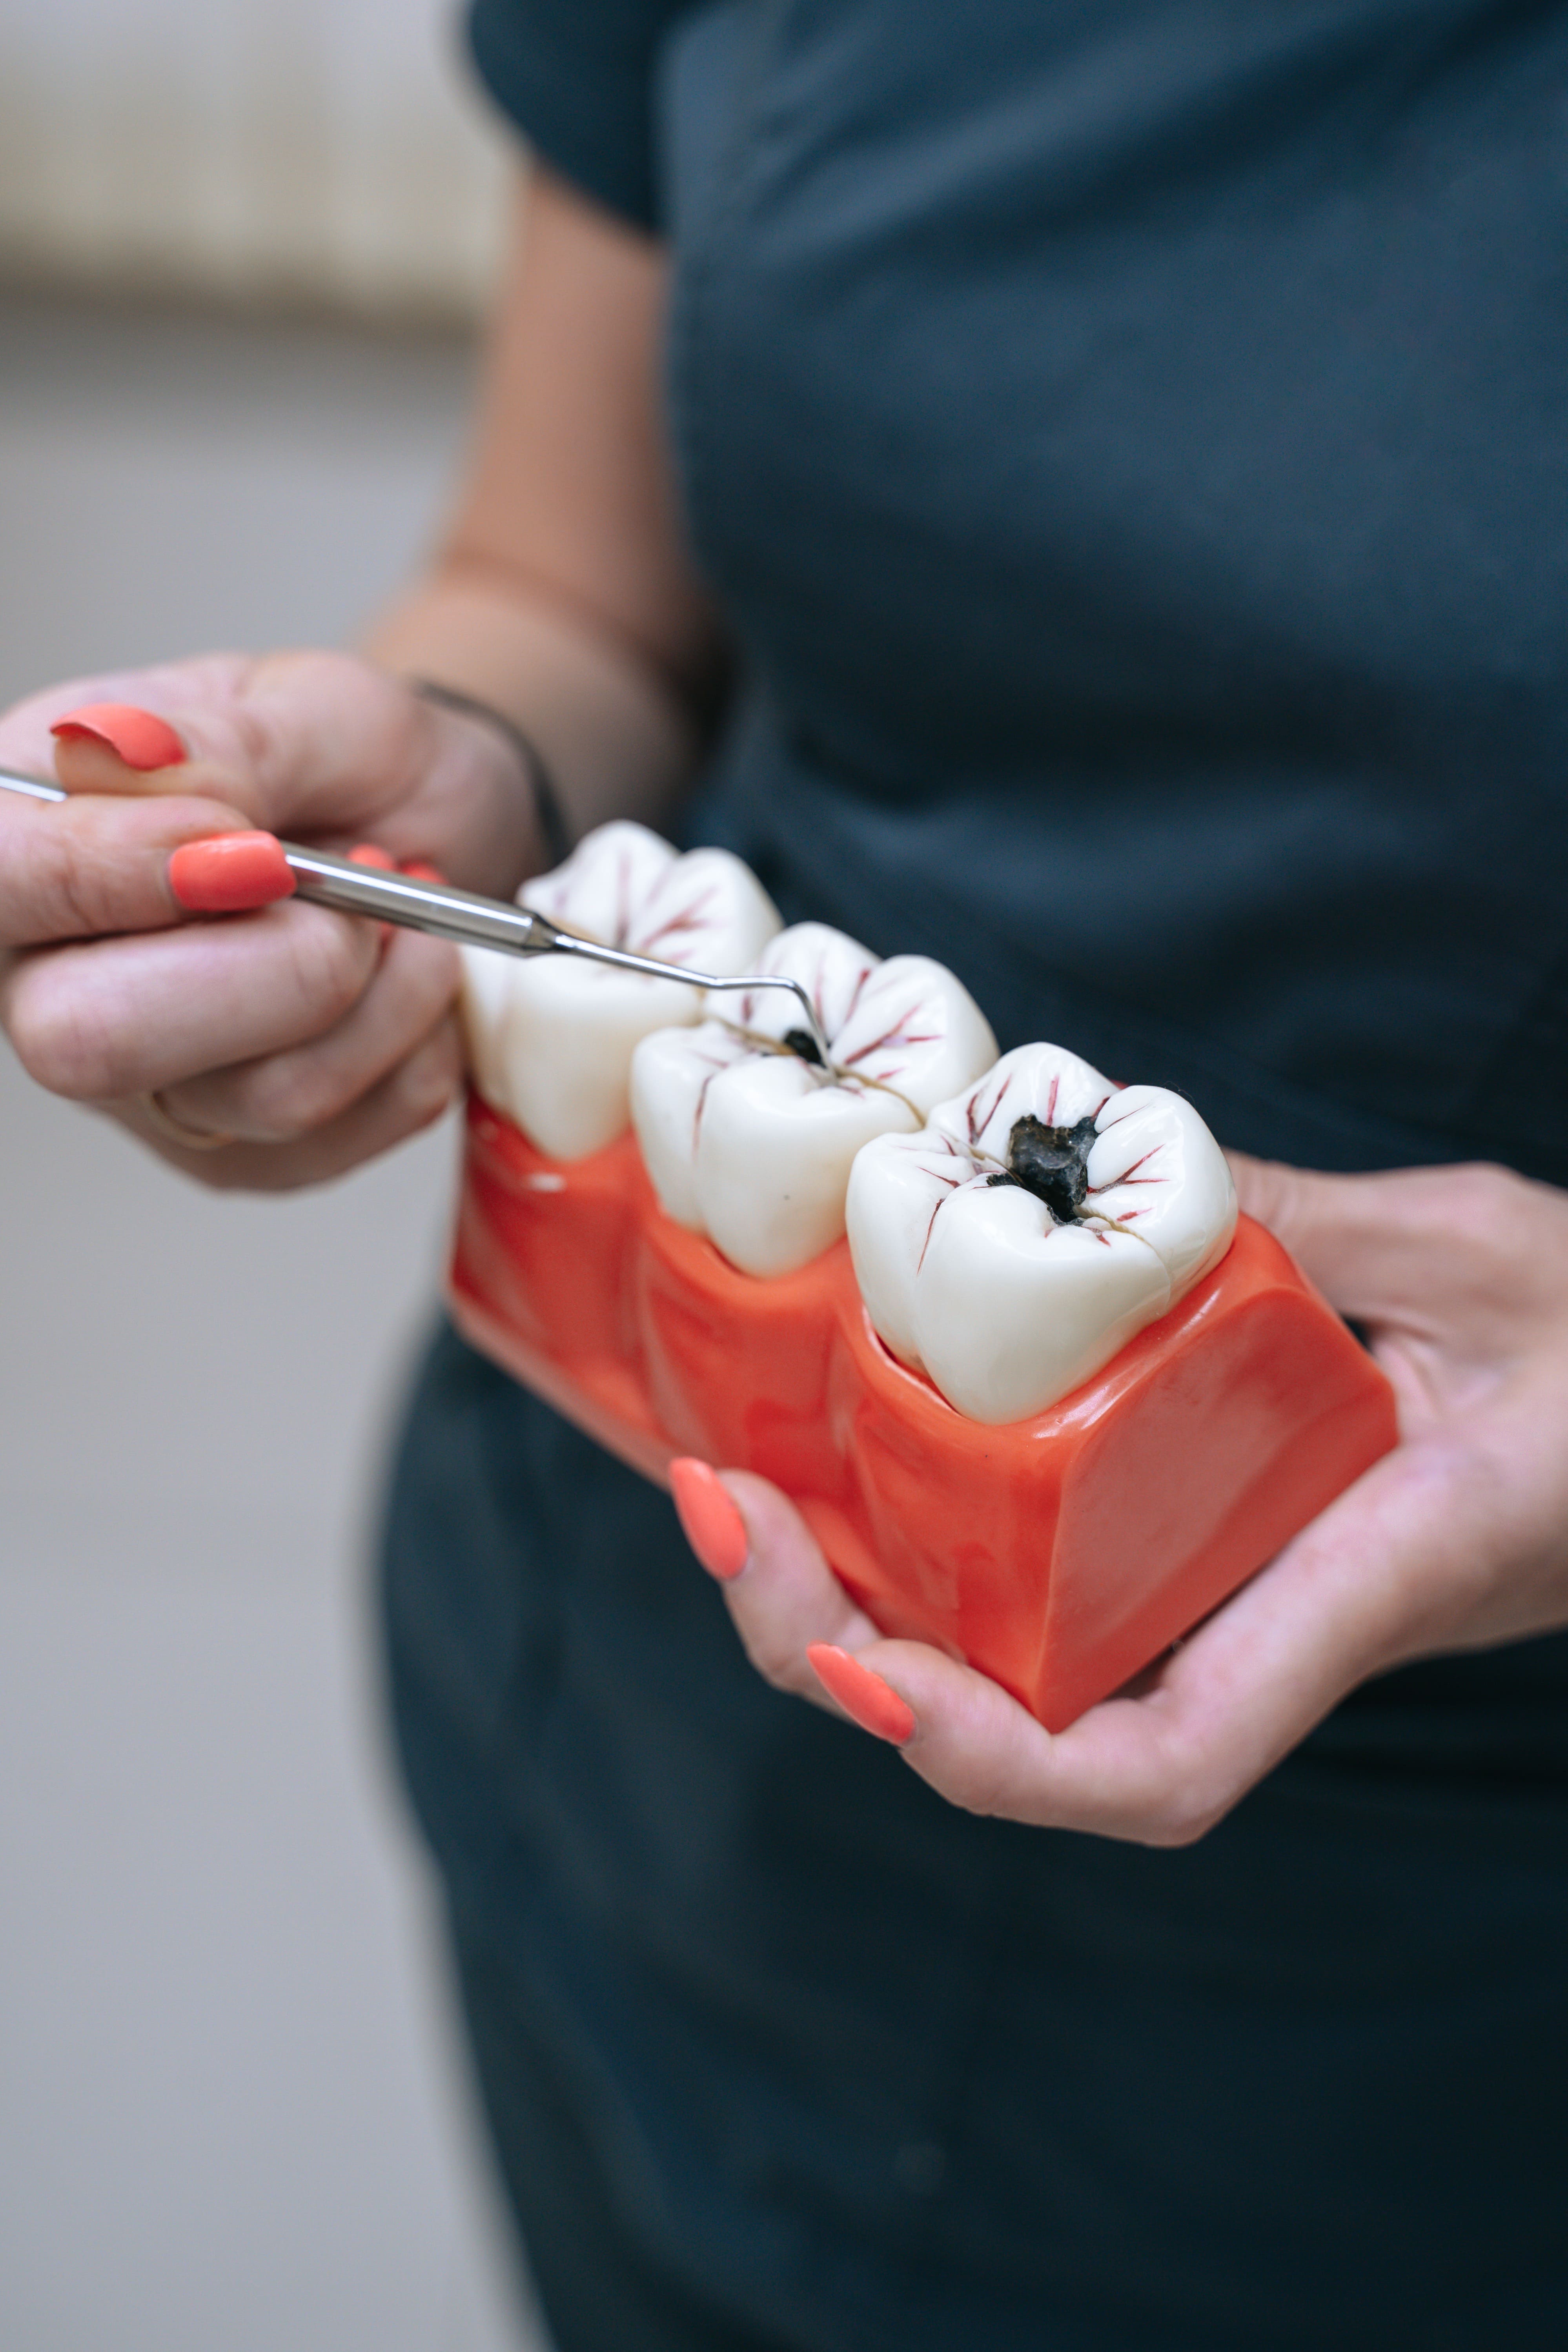 Кариес молочных зубов - виды, его причины и лечение